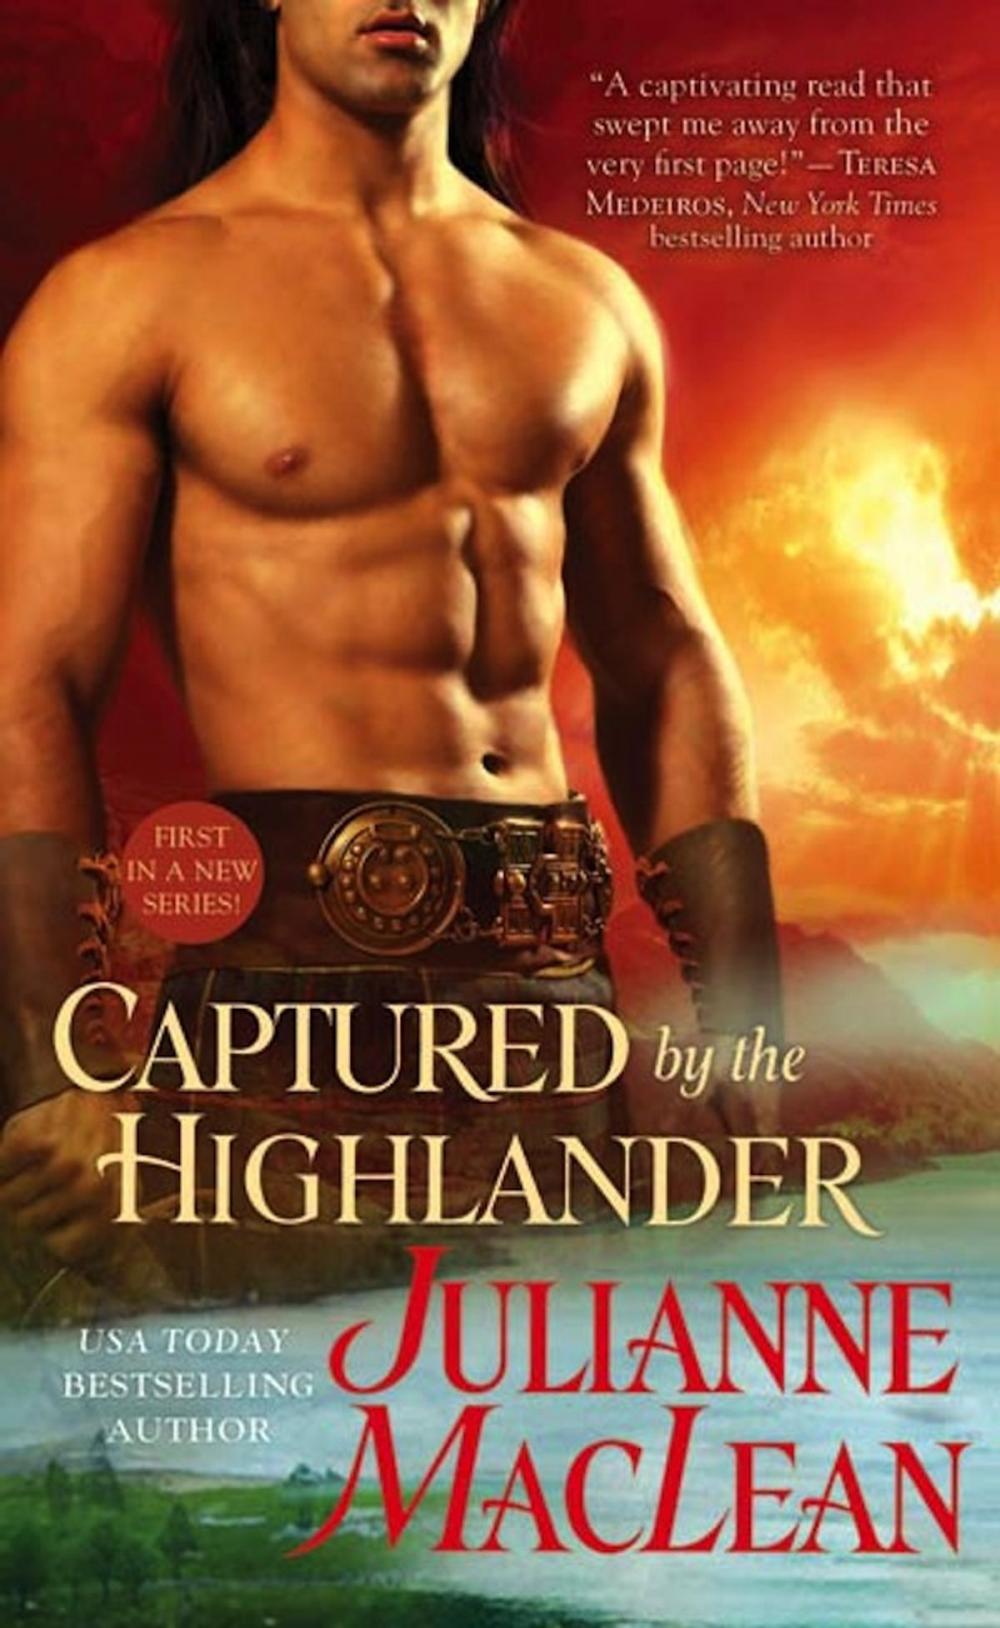 Big bigCover of Captured by the Highlander